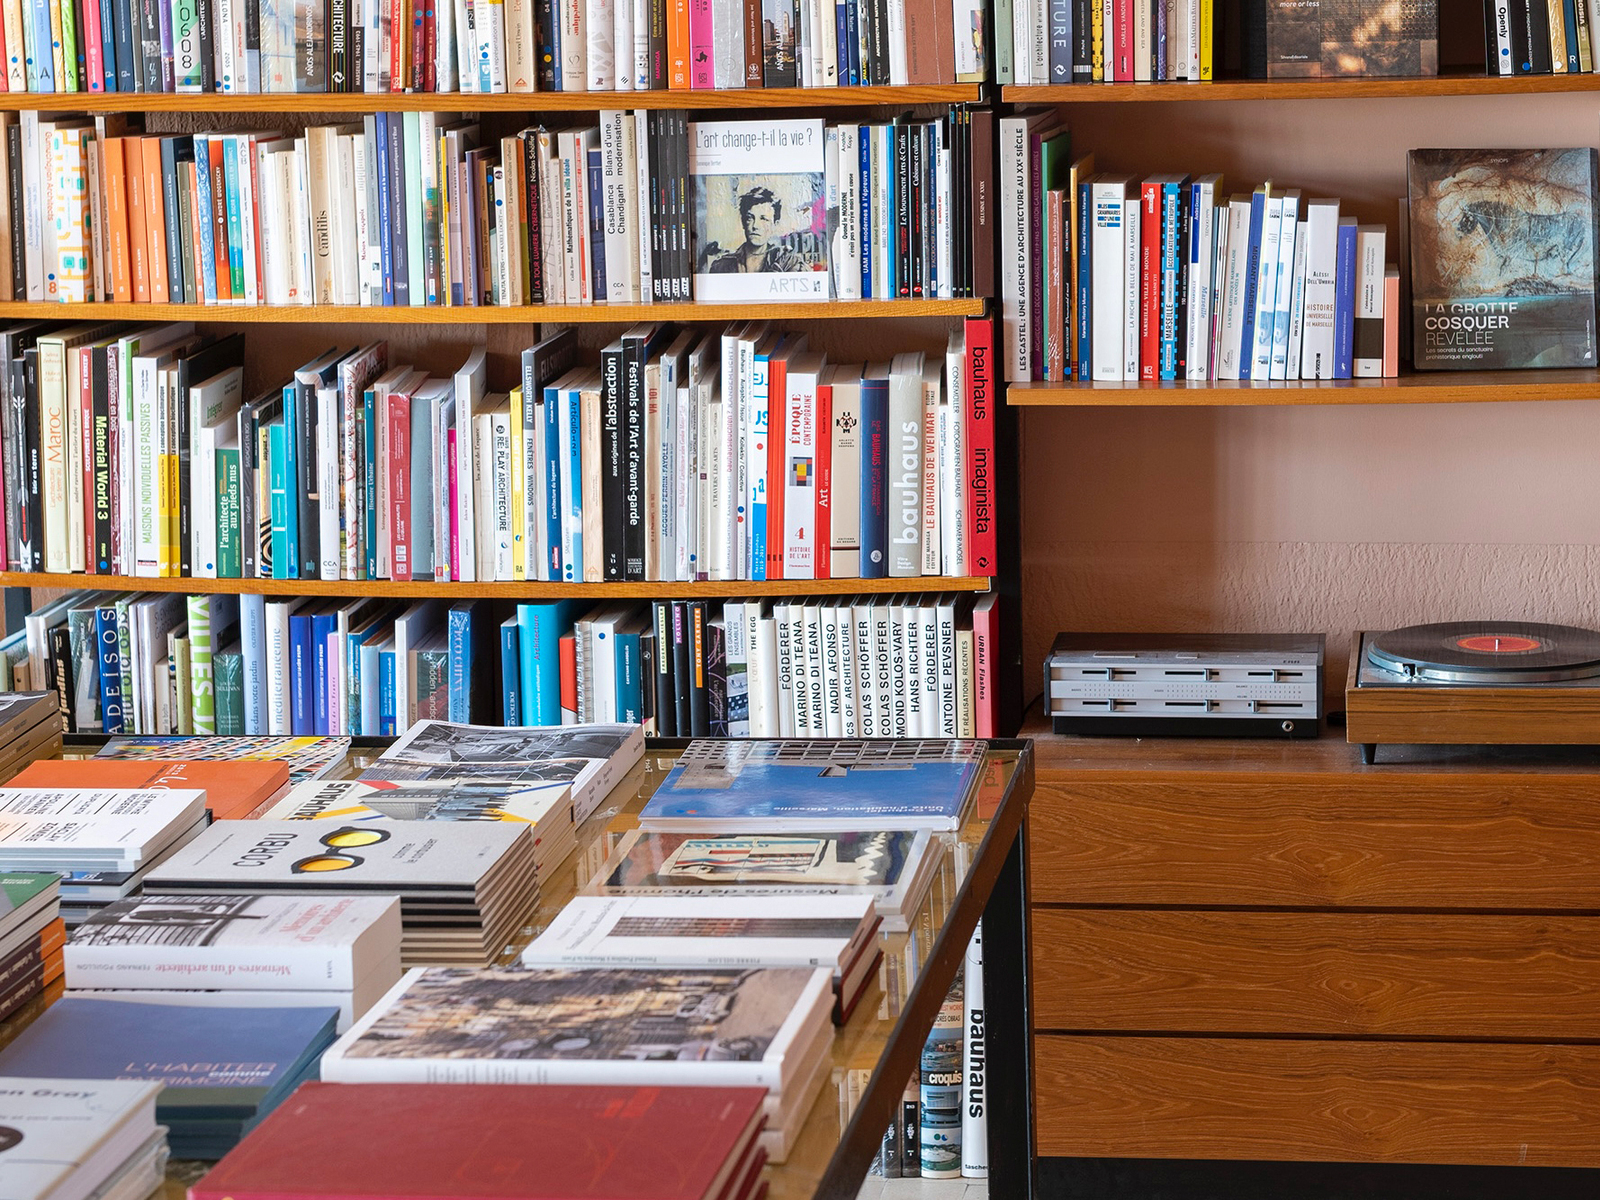 Le Corbusier specialist bookstore